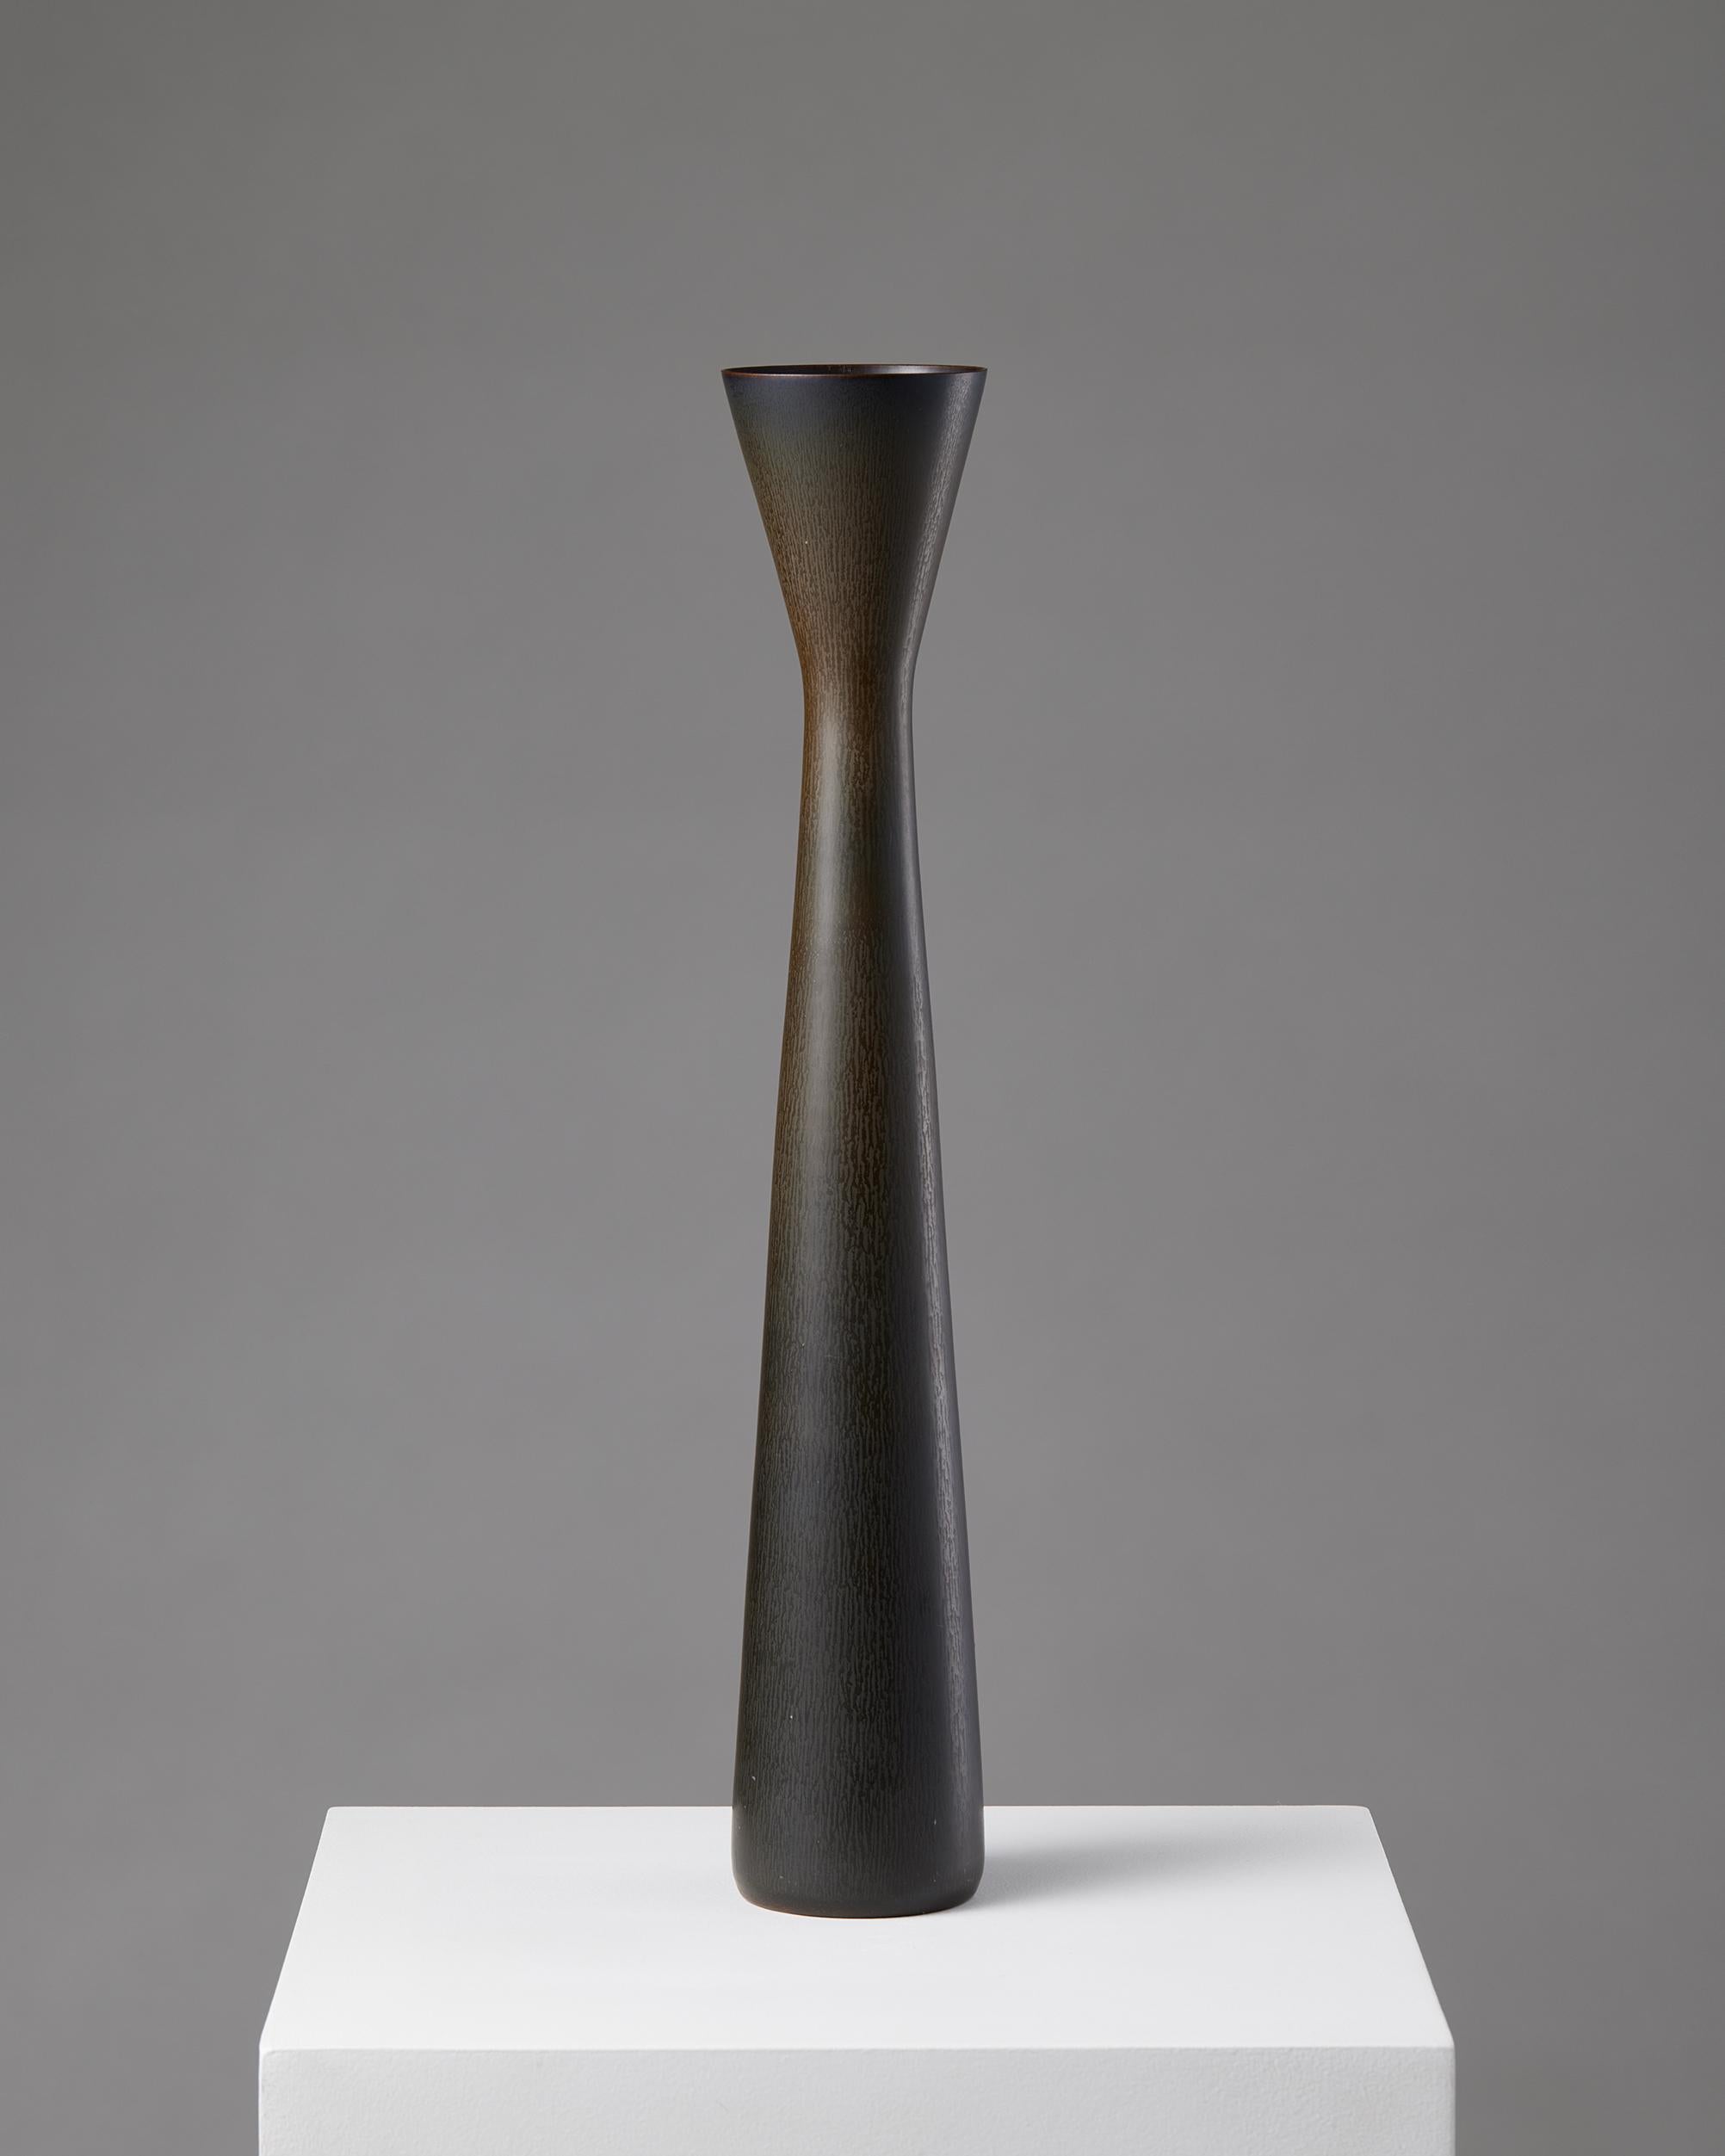 Vase designed by Carl-Harry Stålhane for Rörstrand,
Sweden, 1957.

Stoneware.

Signed.

H: 52.5 cm 
D: 9 cm.